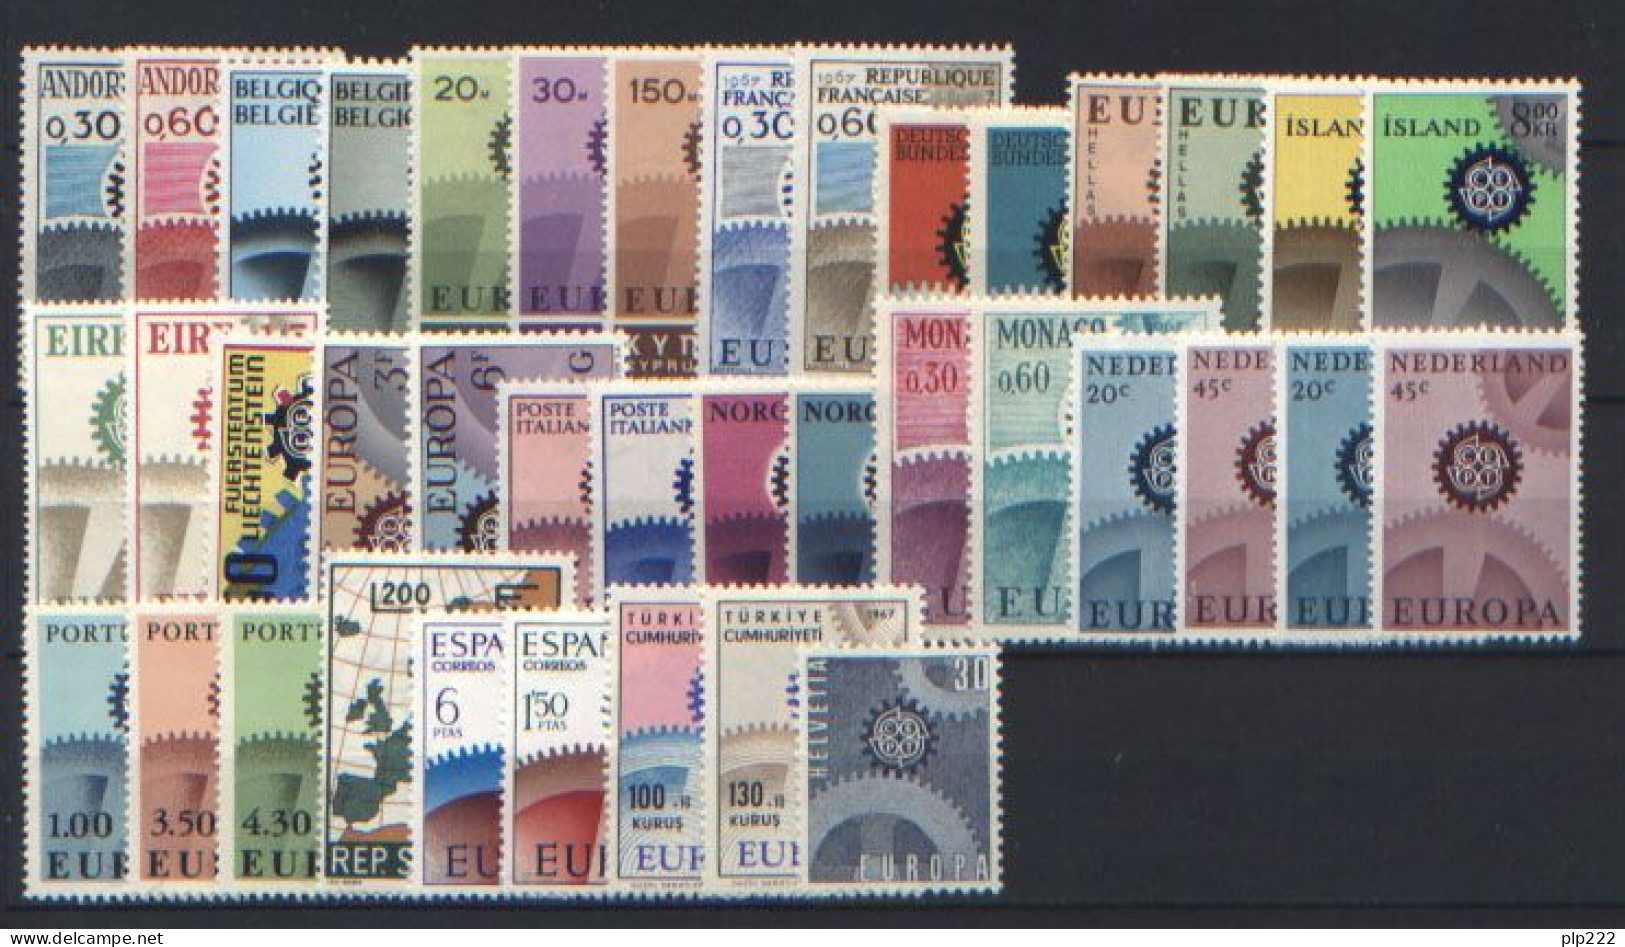 Europa CEPT 1967 Annata Completa + Foglietto / Complete Year Set + S/S **/MNH VF - Années Complètes